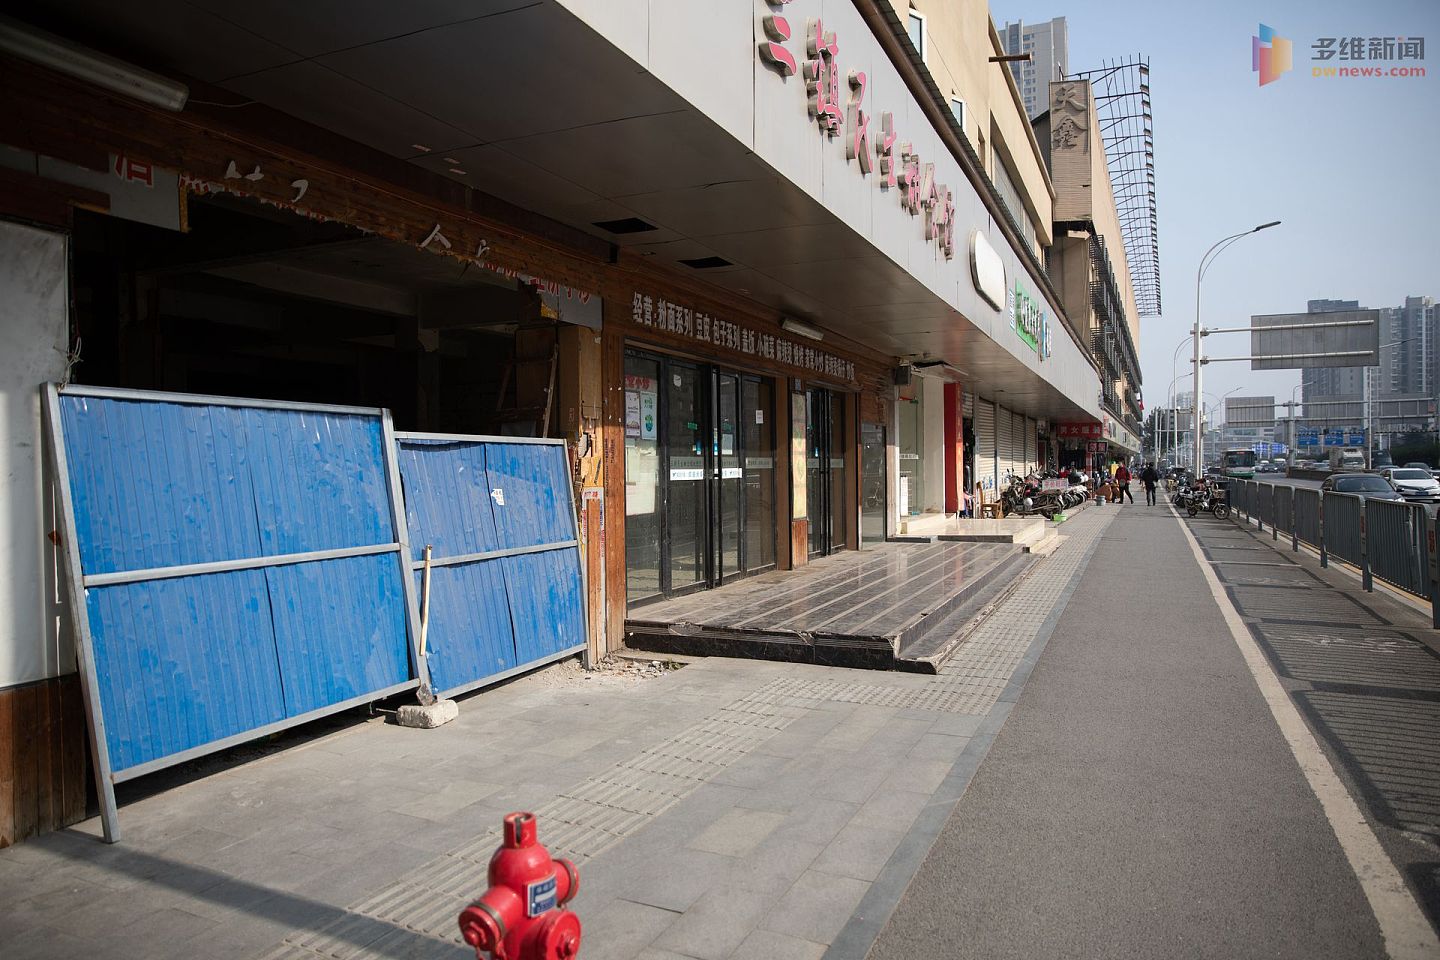 武汉的华南海鲜市场成为武汉疫情传播的一个关键地点。在封闭后，这里经过多轮消杀，现已重新开放二层的眼镜市场。图为华南海鲜市场临街店铺前的人流显得有些冷清。（多维新闻）